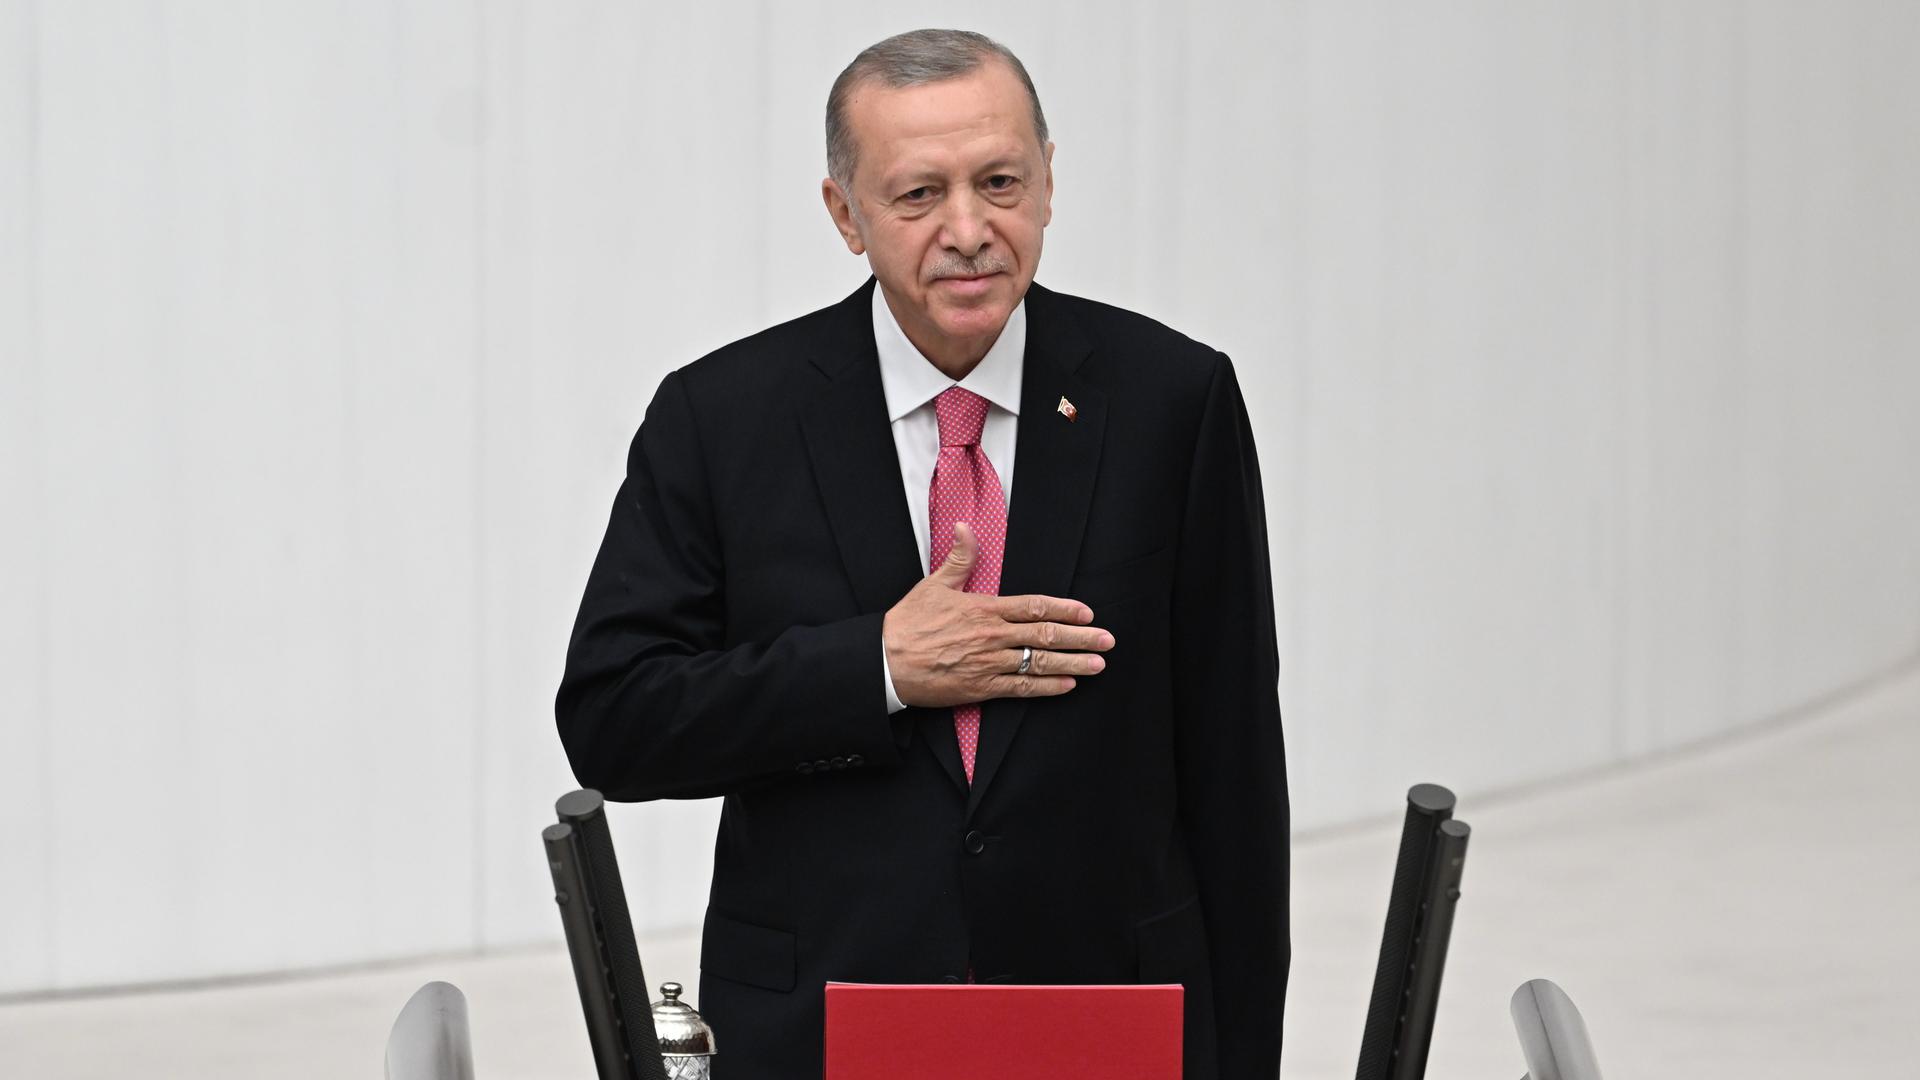 Zu sehen ist der türkische Präsident Erdogan hinter einem Rednerpult im Parlament in Ankara.